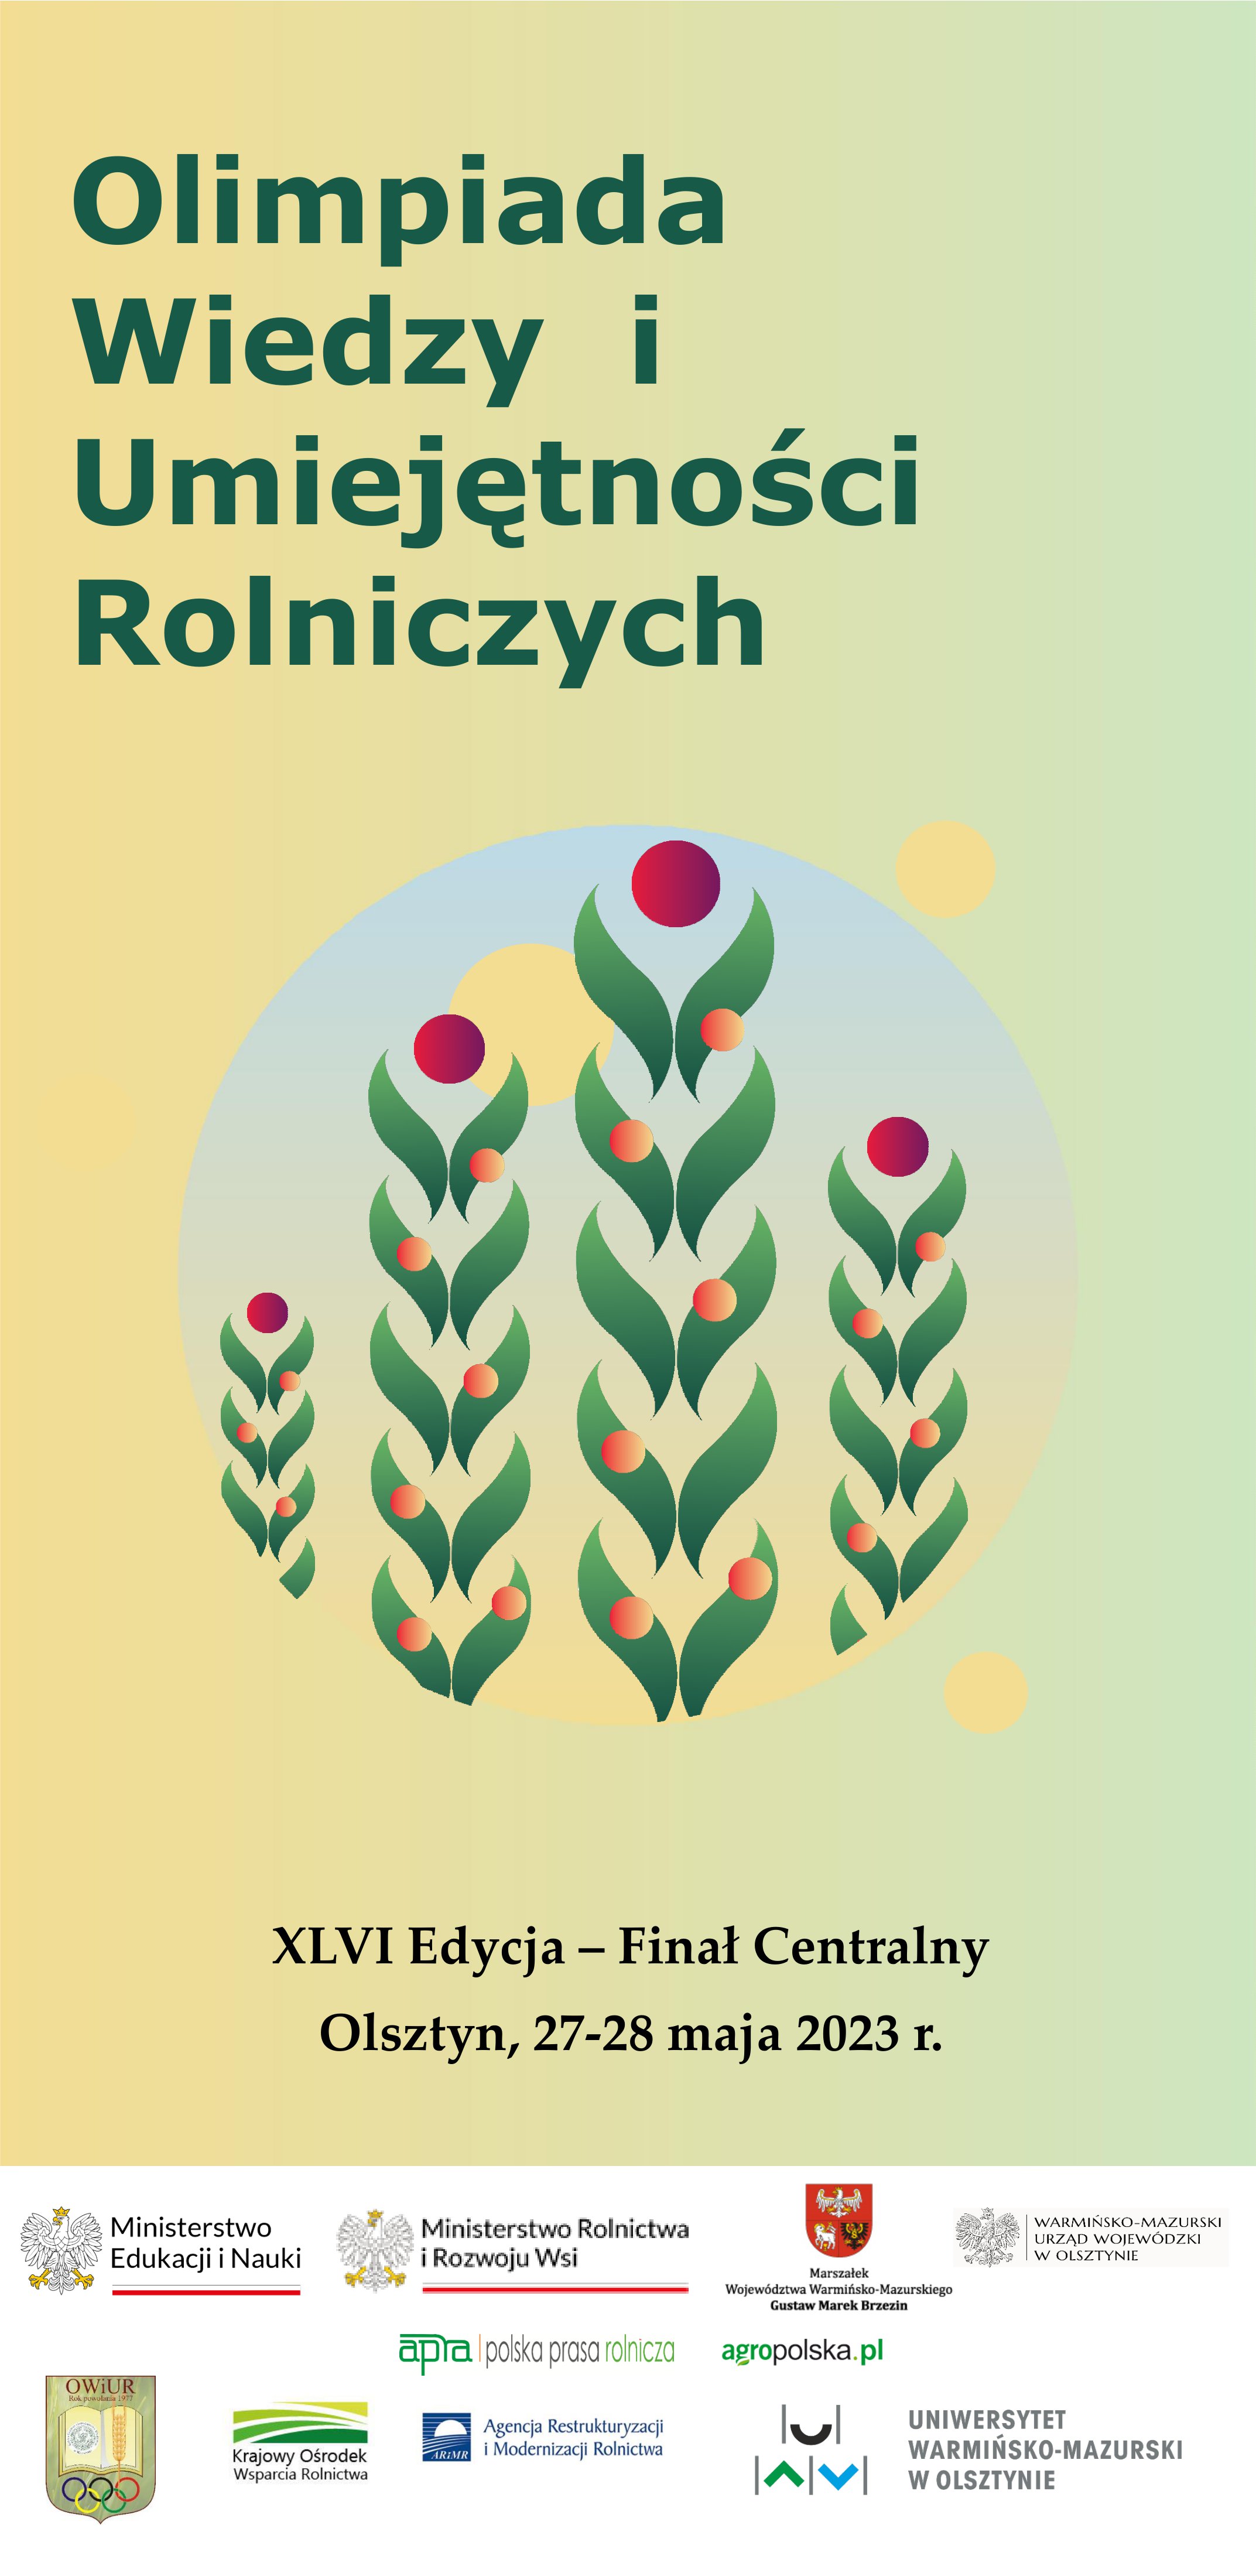 Plakat Olimpiady Wiedzy i Umiejętności Rolniczych, materiały organizatorów.